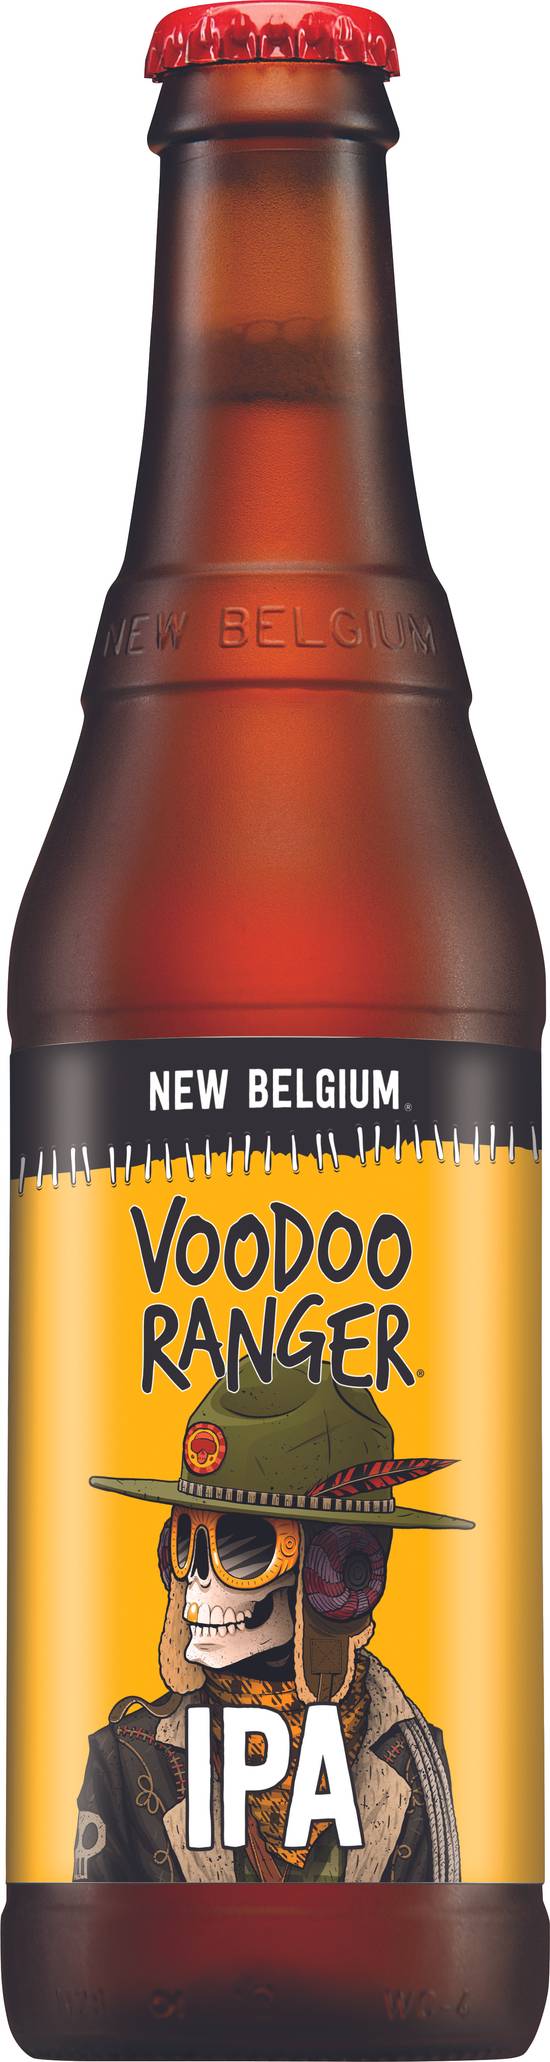 Voodoo Ranger Ipa Beer (12 fl oz)